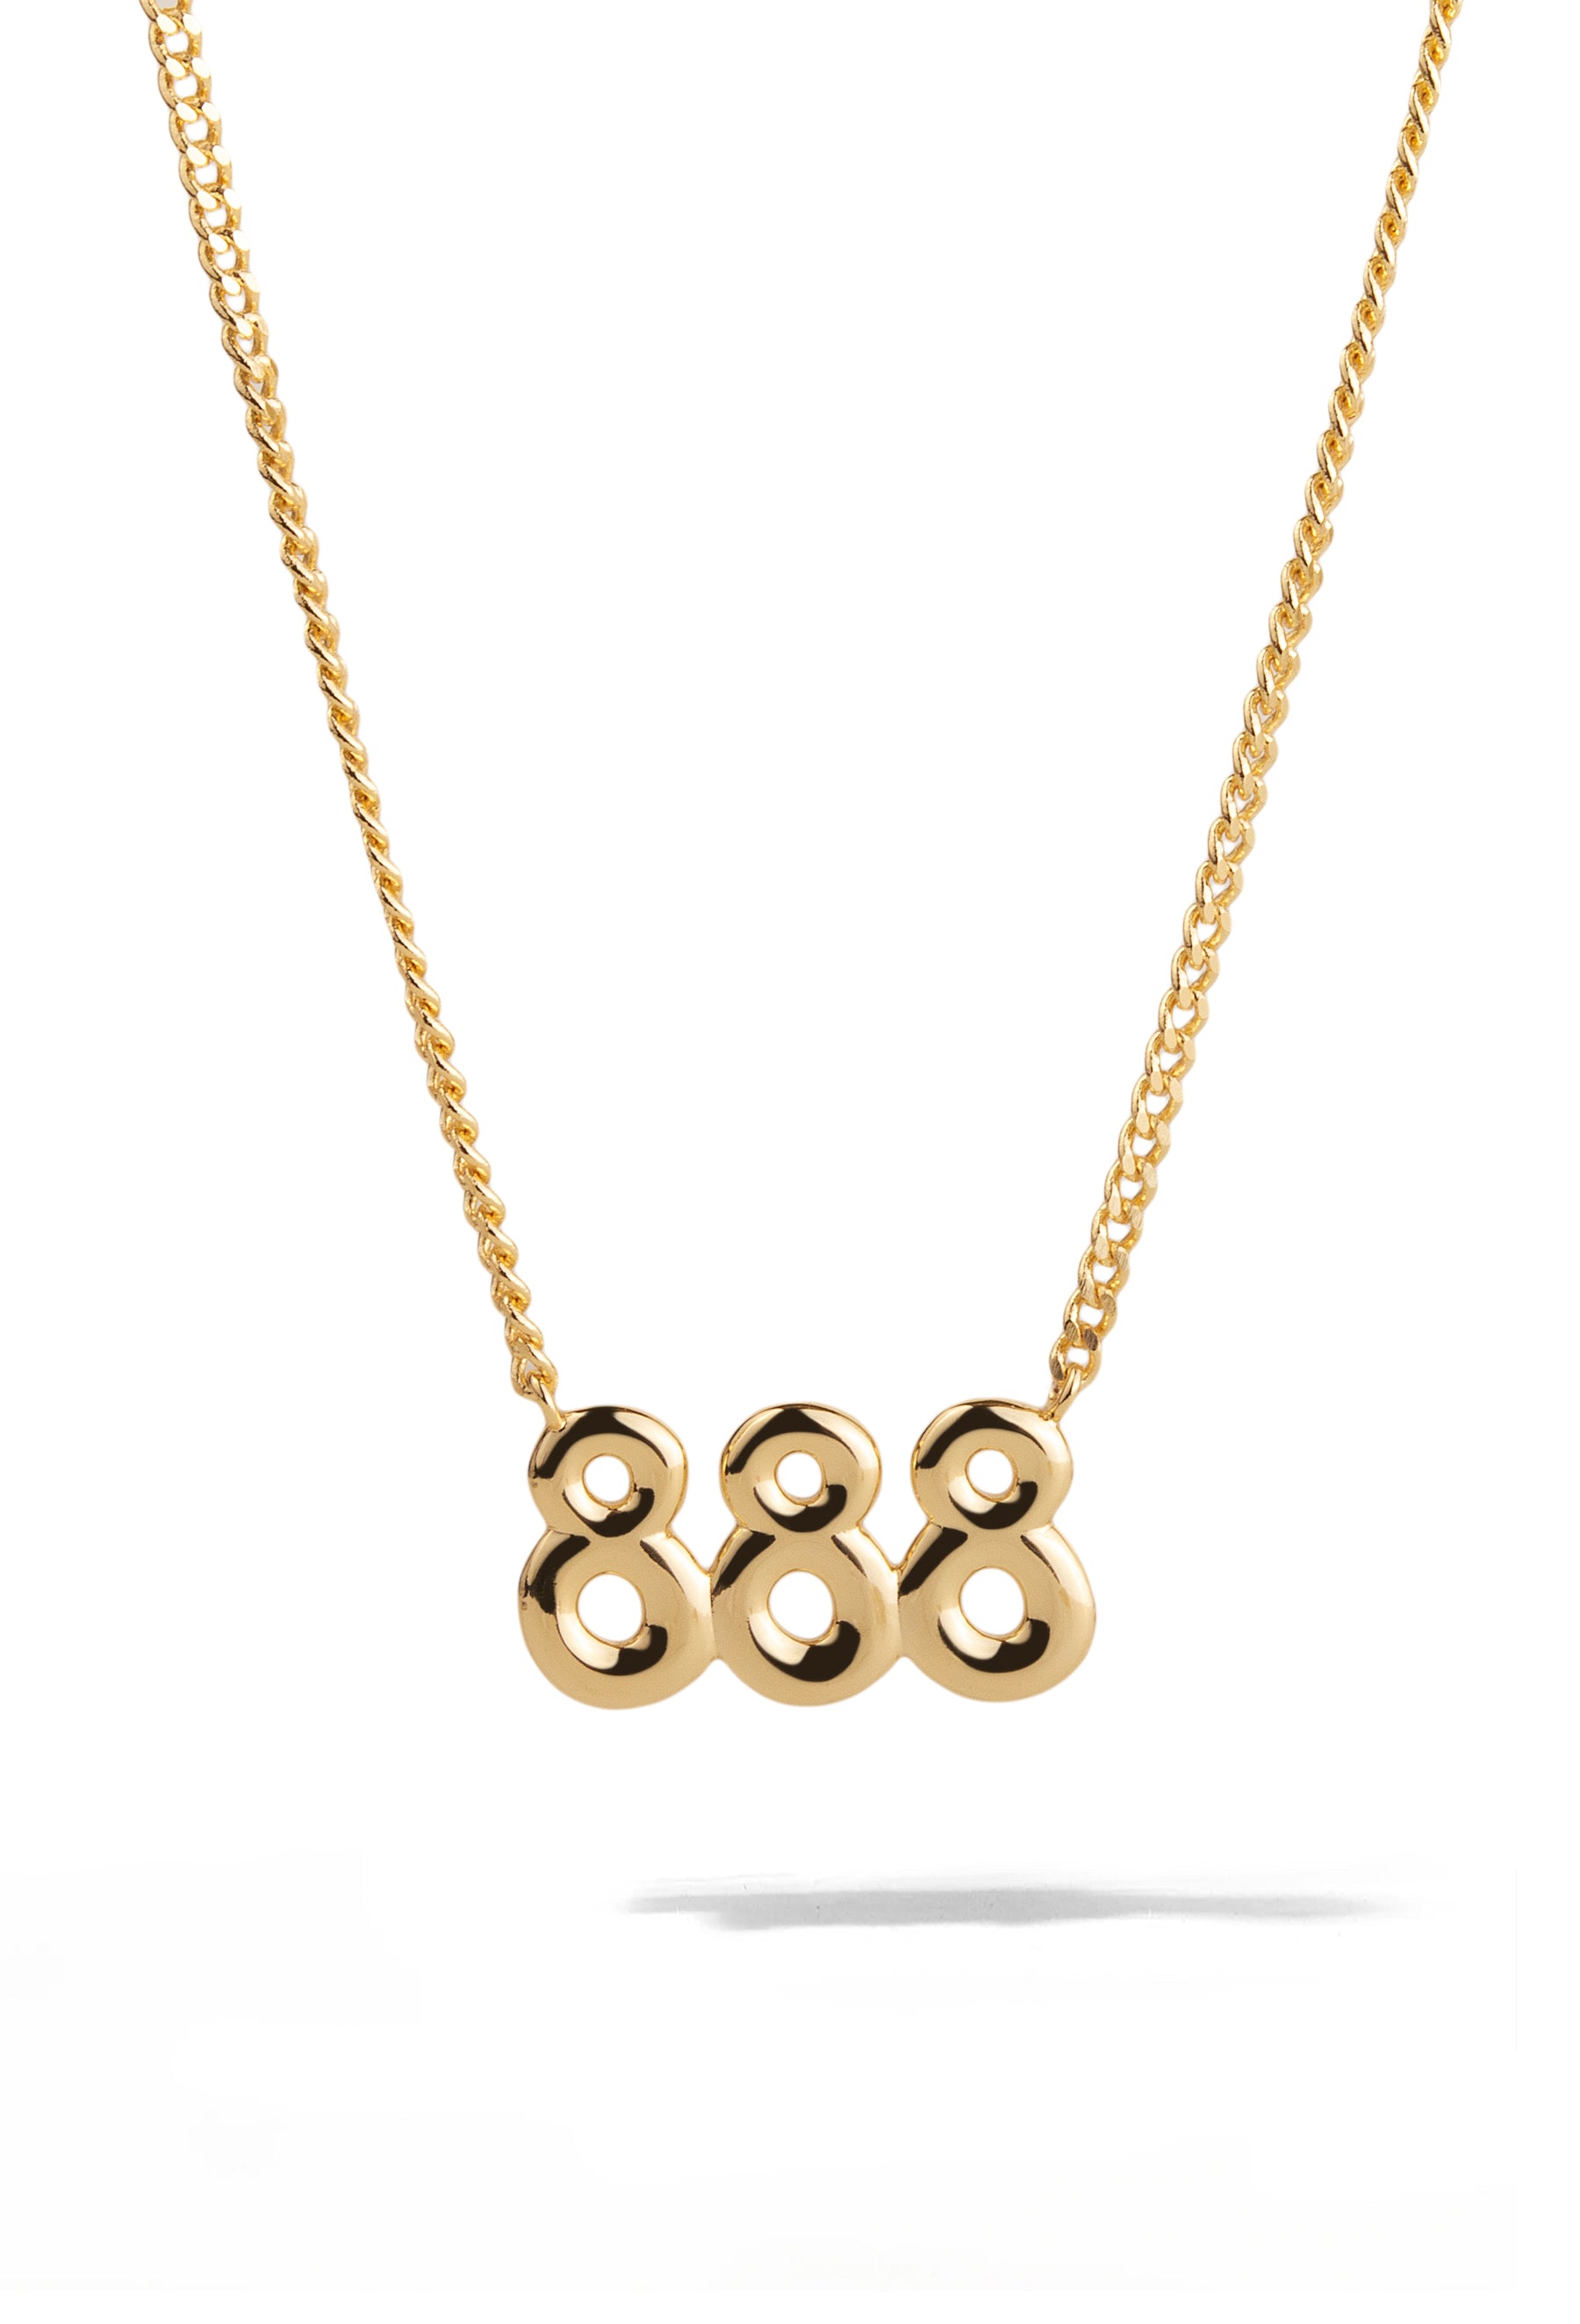 888 Angel Number Gold Necklace | Abundance